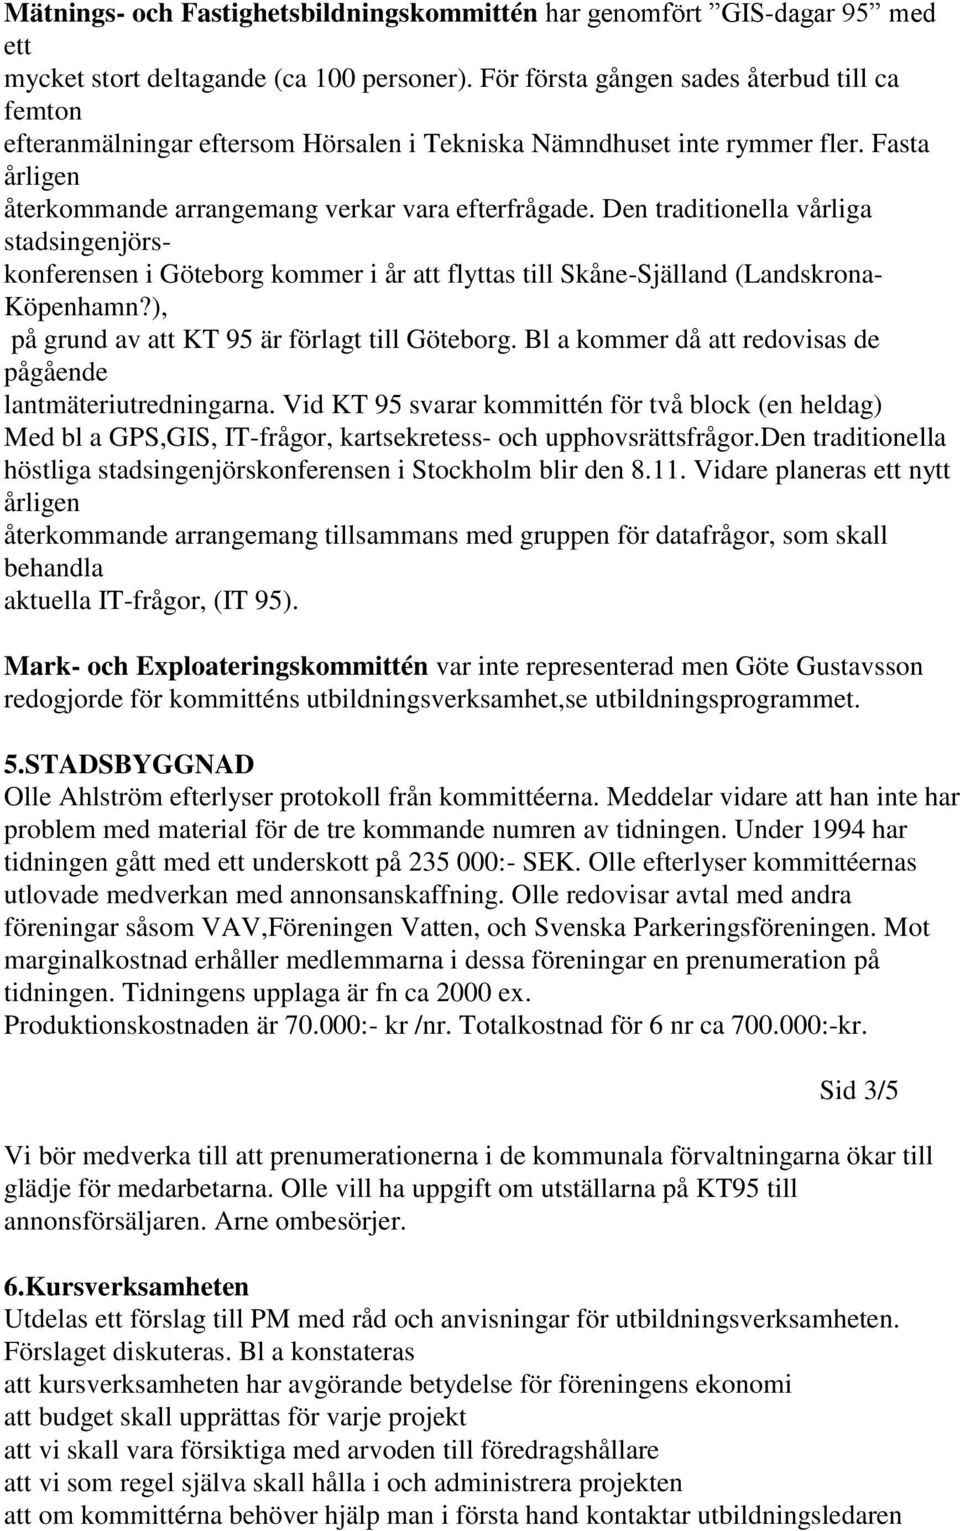 Den traditionella vårliga stadsingenjörskonferensen i Göteborg kommer i år att flyttas till Skåne-Själland (Landskrona- Köpenhamn?), på grund av att KT 95 är förlagt till Göteborg.